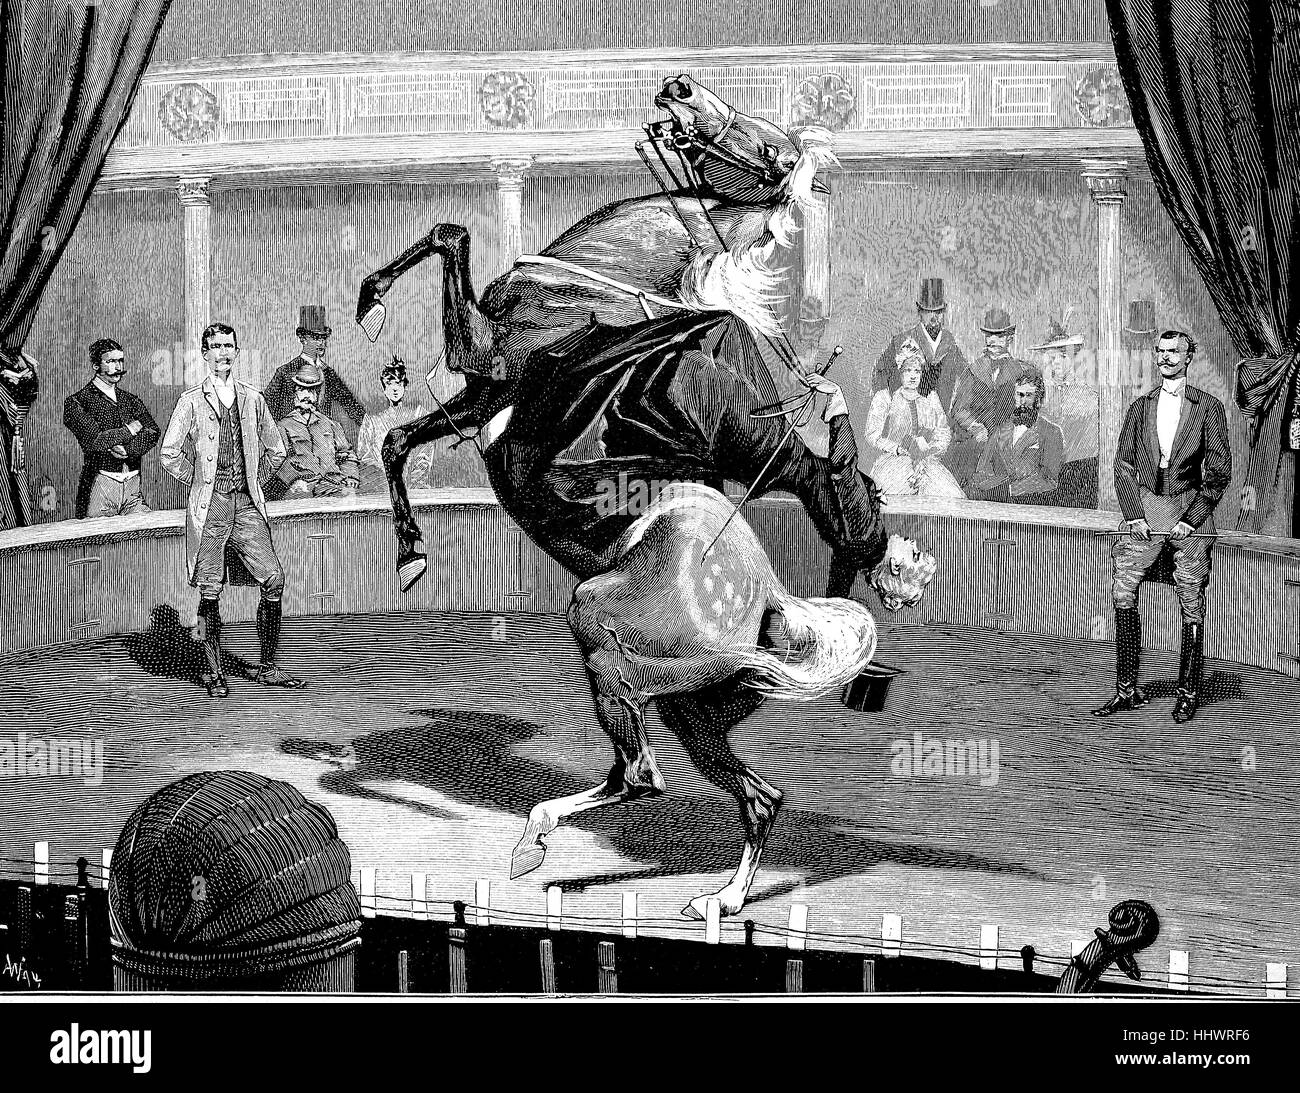 Akrobatik auf dem Pferd, die Reiterin Baroness von Rhaden im Apollo Theater in Berlin, Deutschland, historisches Bild oder Illustration, veröffentlicht 1890, digital verbessert Stockfoto